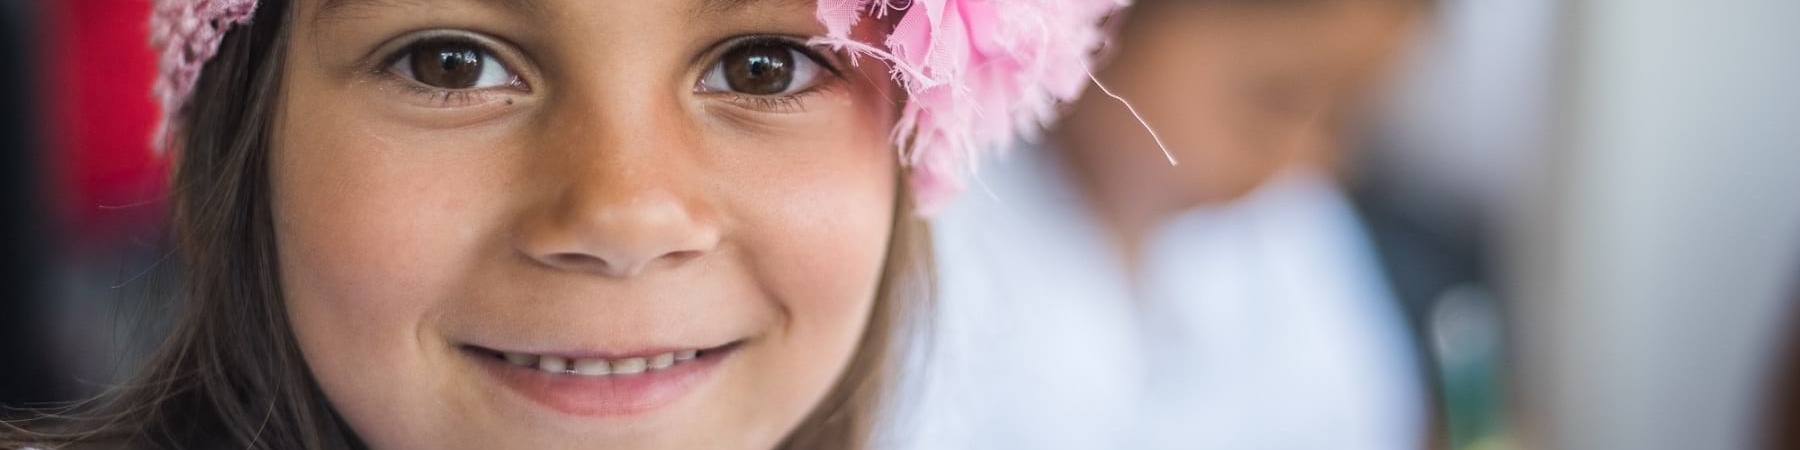 Primo piano bambina sorridente con fascia rosa in testa